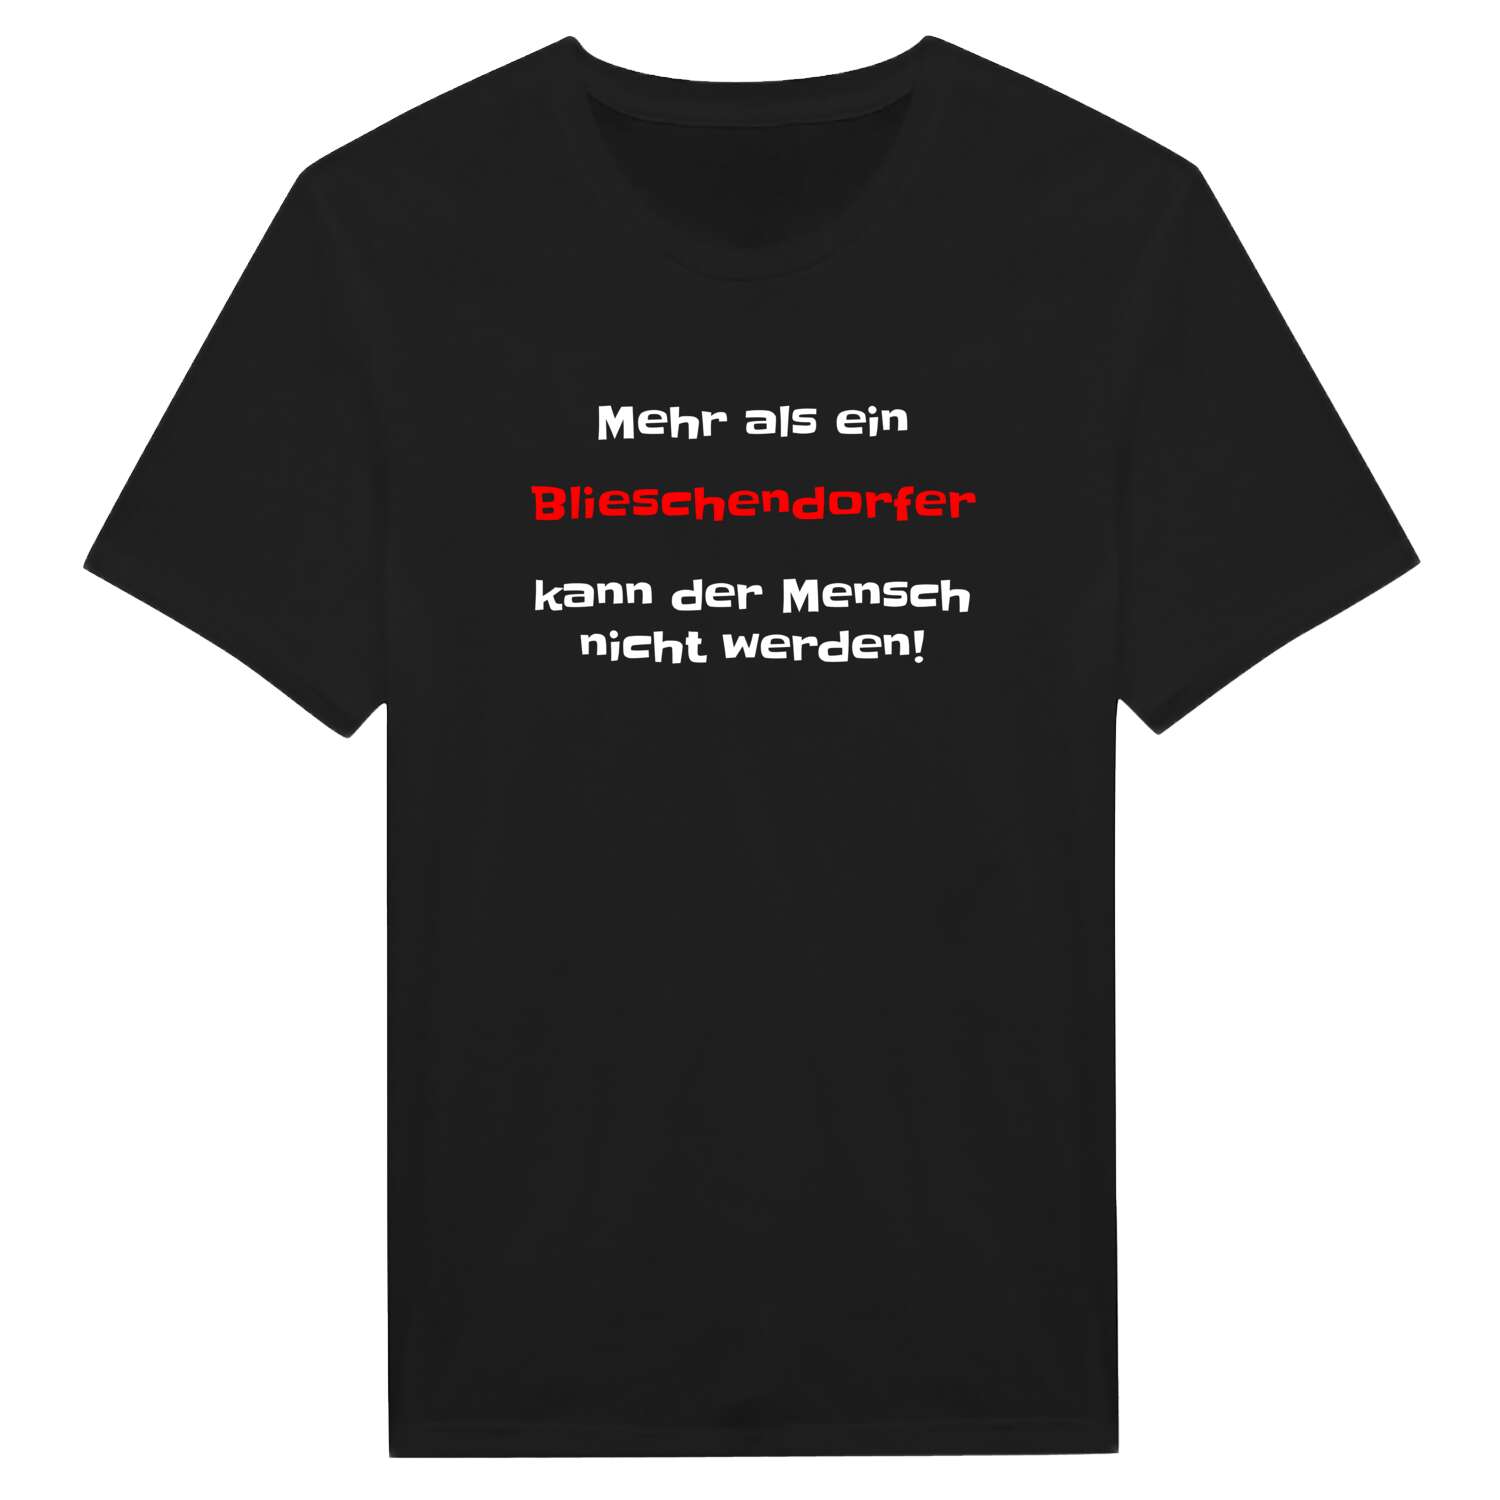 Blieschendorf T-Shirt »Mehr als ein«